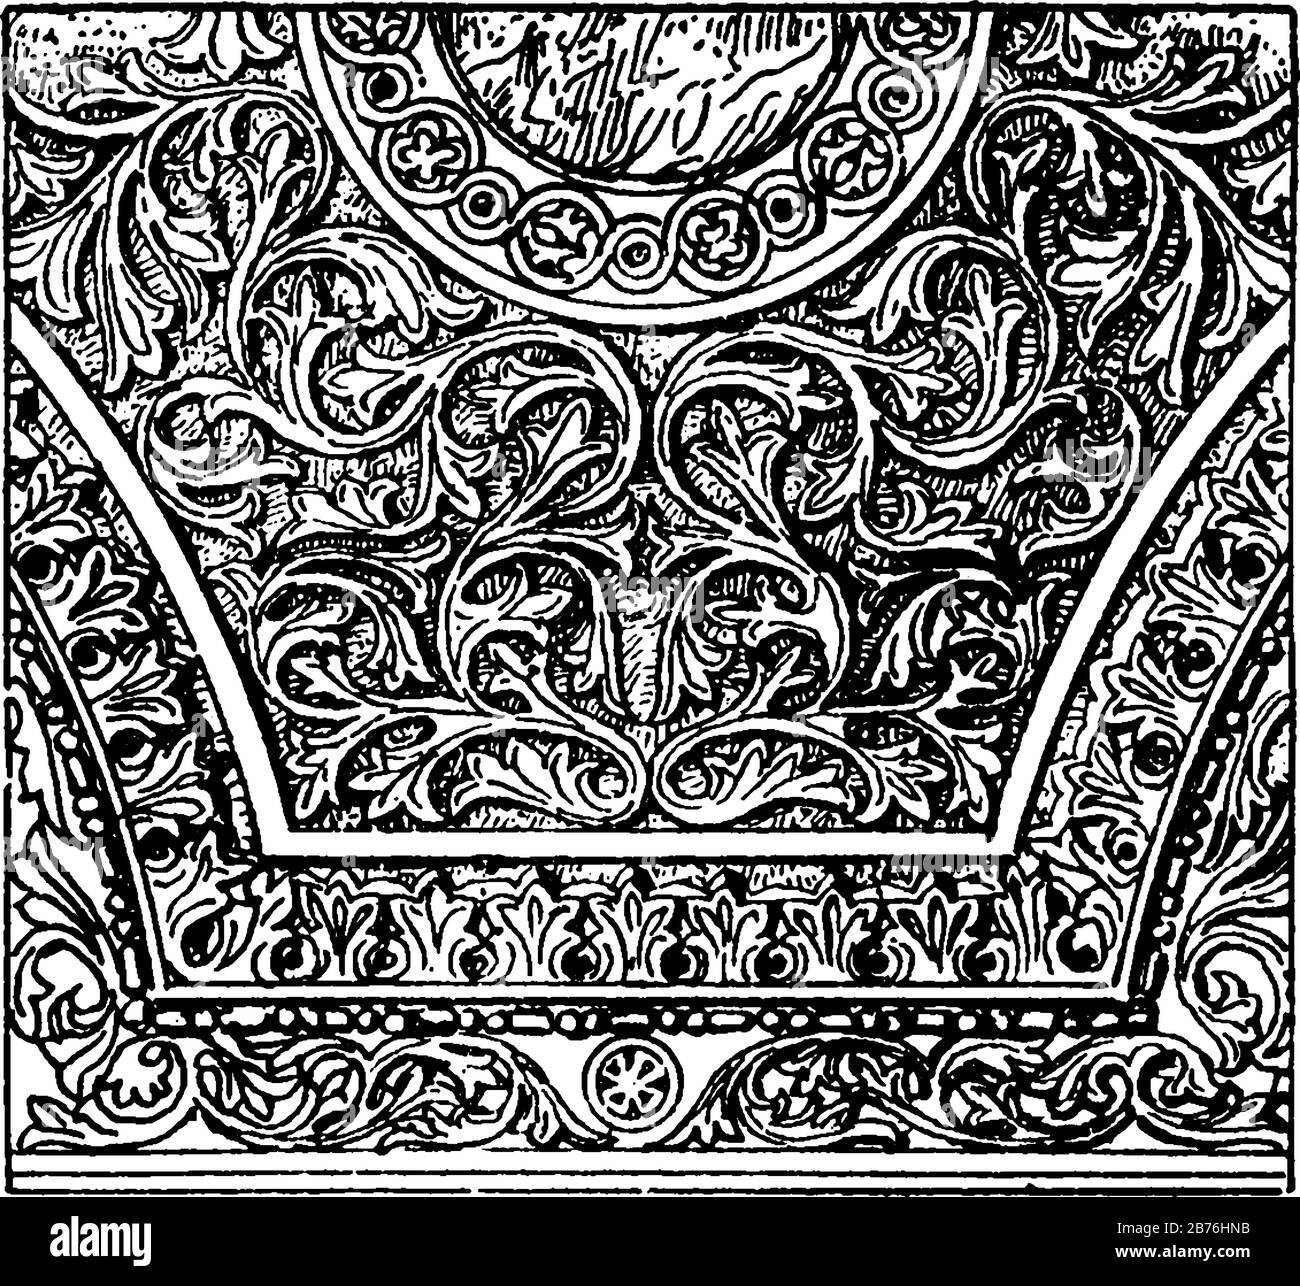 Spandrel von der Hagia Sophia, Decke oder Rahmen, Schultern von angrenzenden Bögen, Decke oder Zierleiste, Vintage-Linien-Zeichnung oder Gravurzeichnung. Stock Vektor